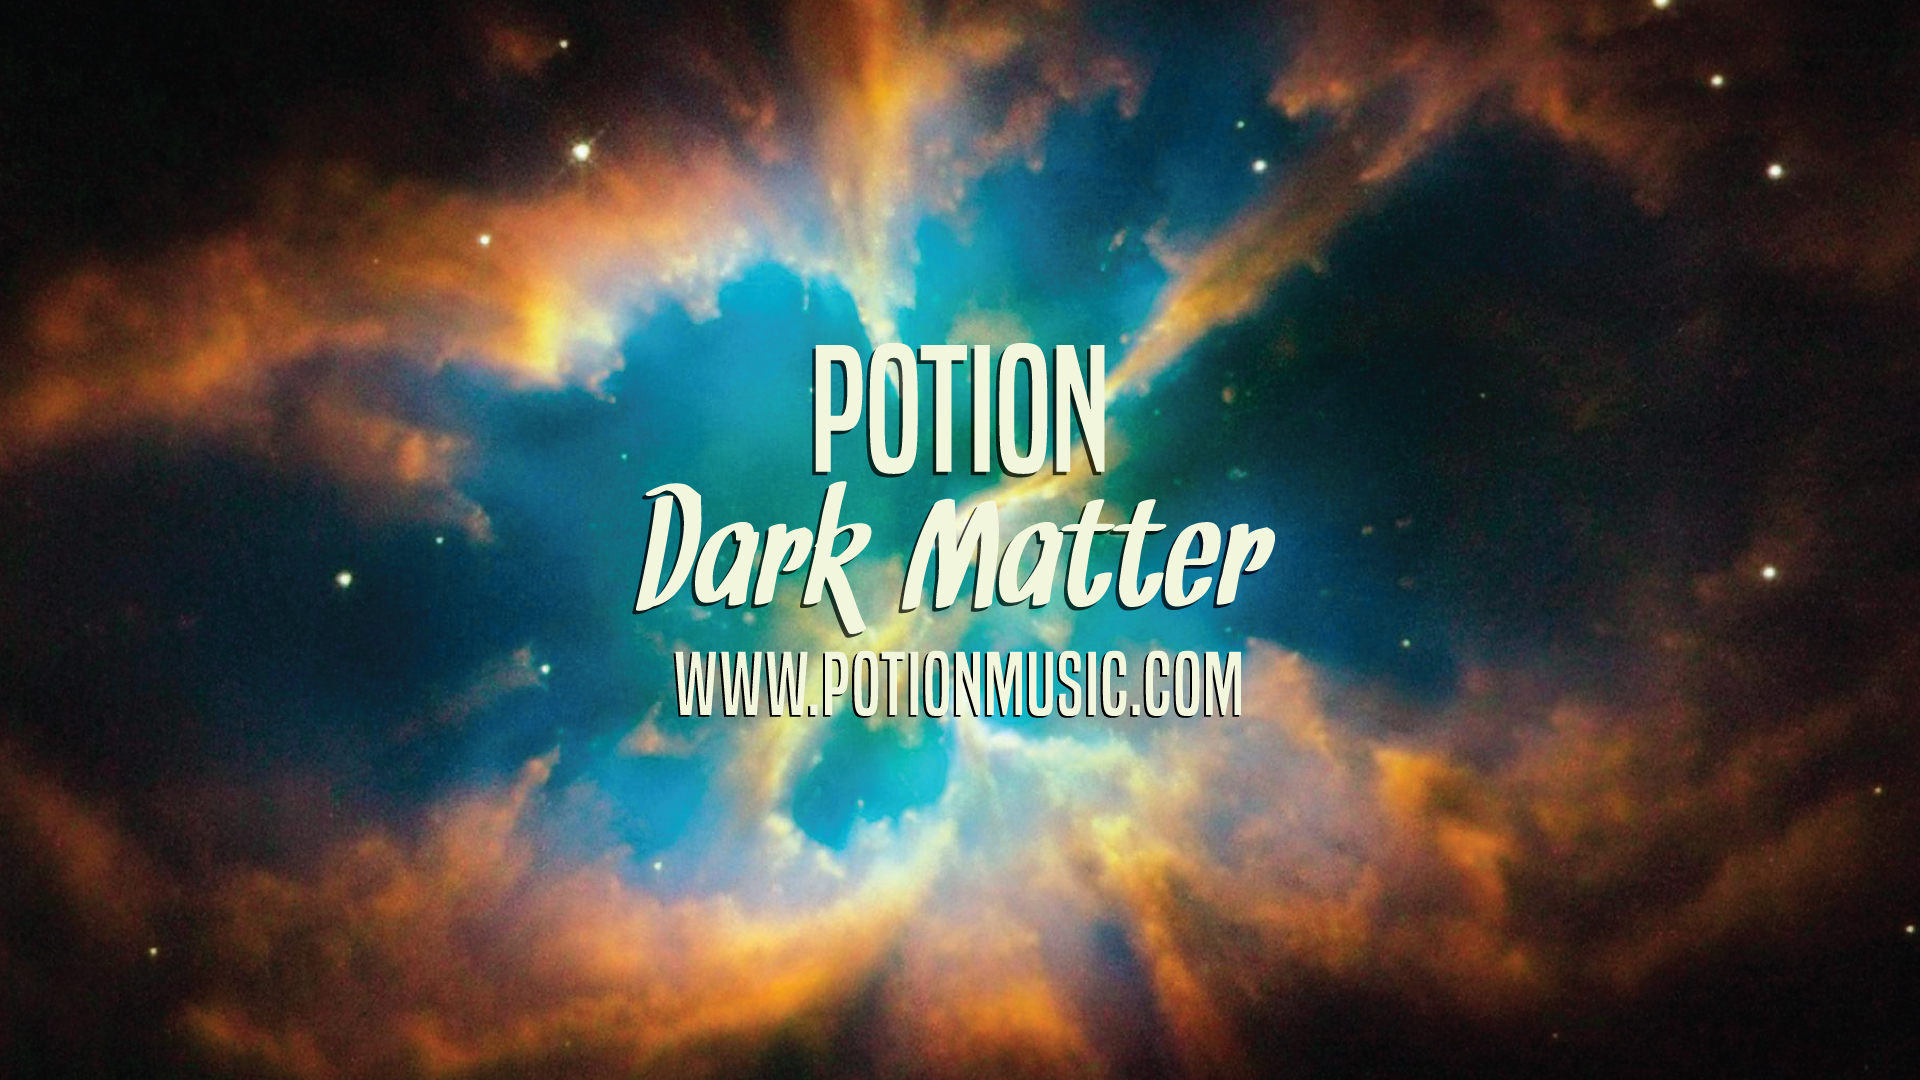 Potion: Dark Matter Video Still